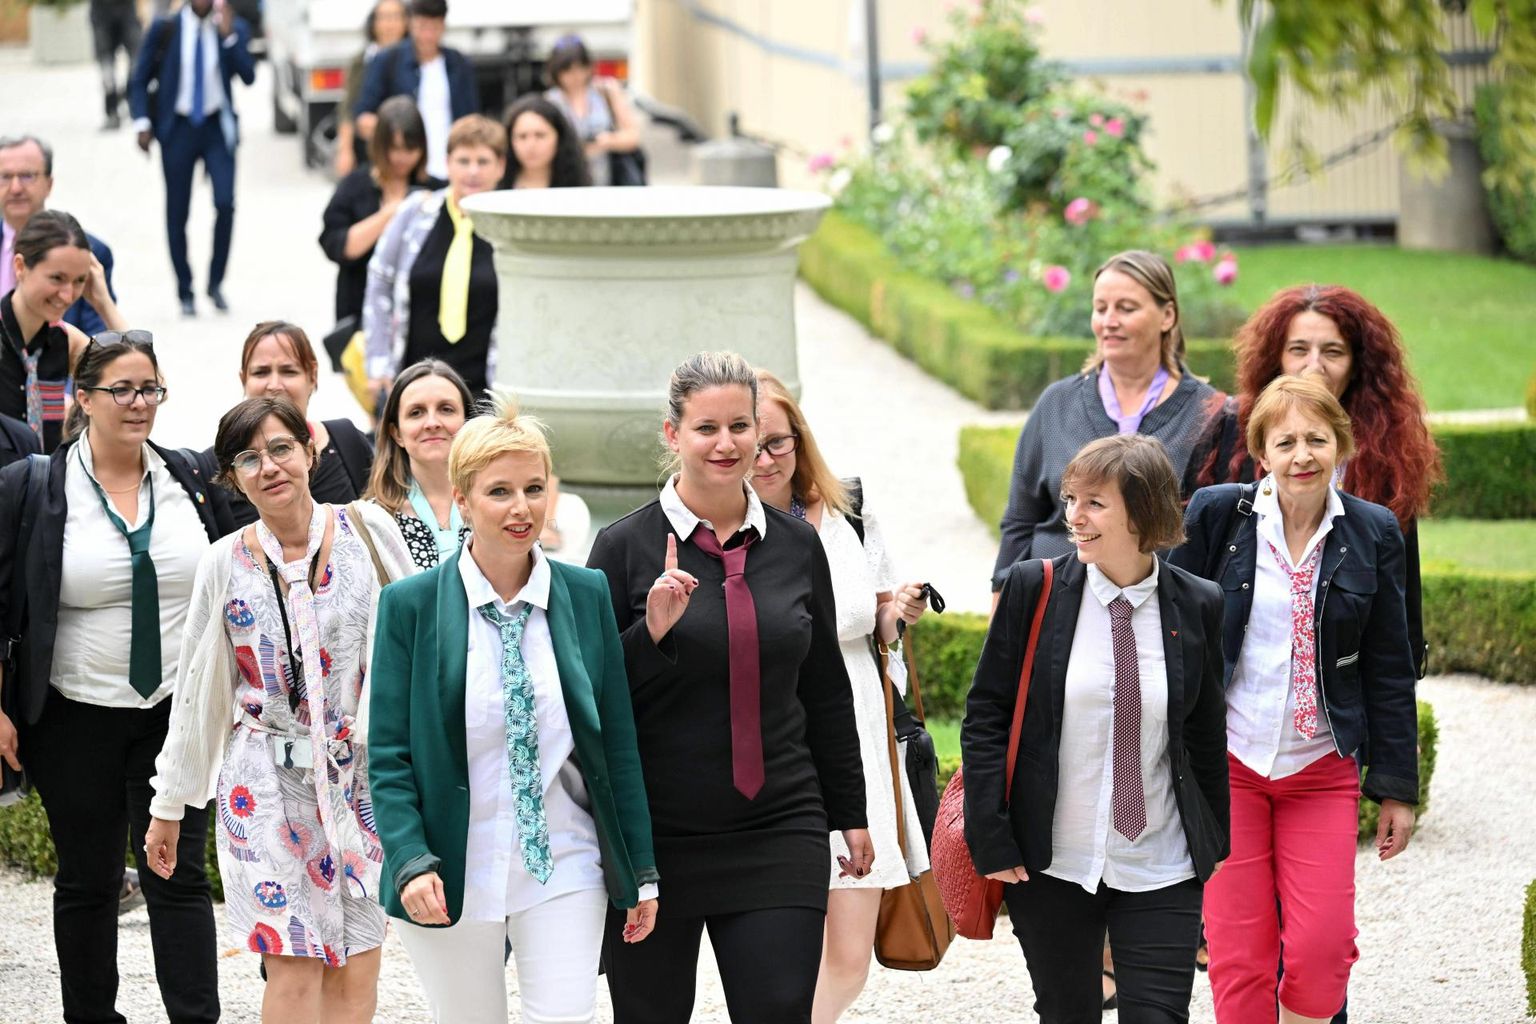 Vasakerakonna Alistamatu Prantsusmaa (LFI) naisparlamendisaadikud tulid üleeile tööle lipsuga, et protestida nii meesrahvaesindajatelt lipsu nõudmise vastu. Vasakpopulistide väitel on nõue kohatu ja lisaks diskrimineerib naisi.